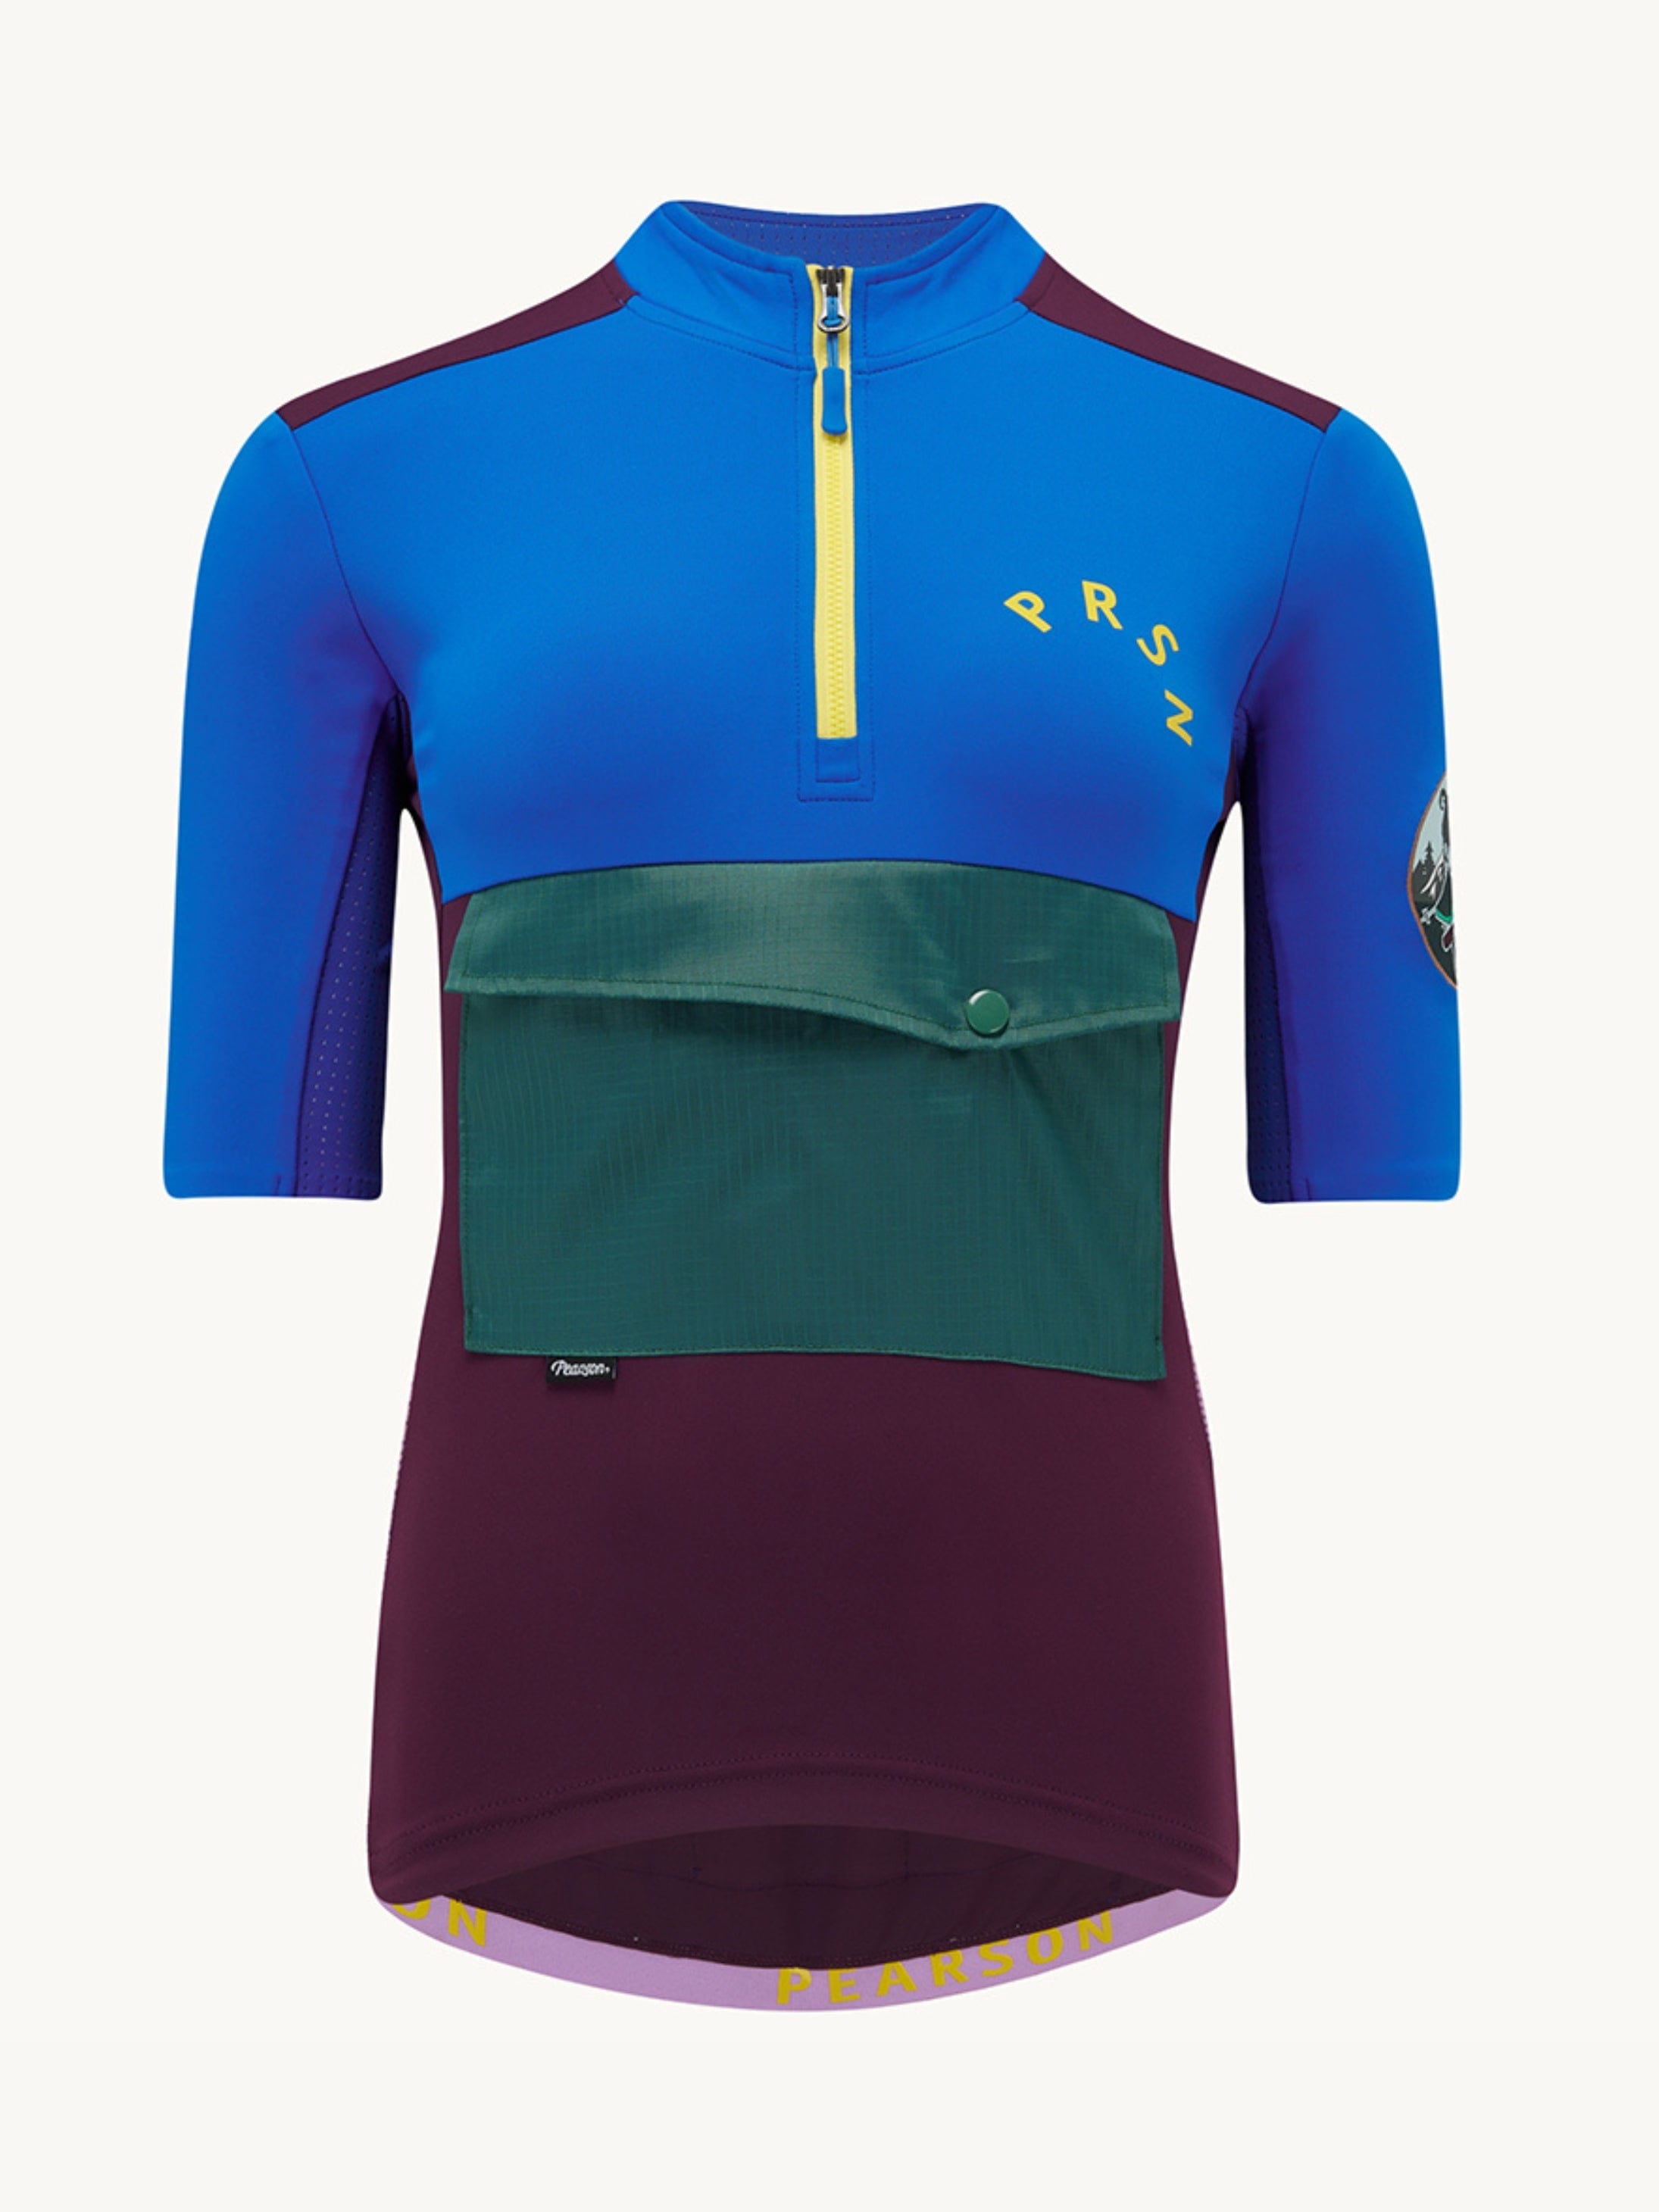 Pearson Cycles Pearson1860, Stowaway - Women's Adventure Short Sleeve Jersey, Deep Purple / XS